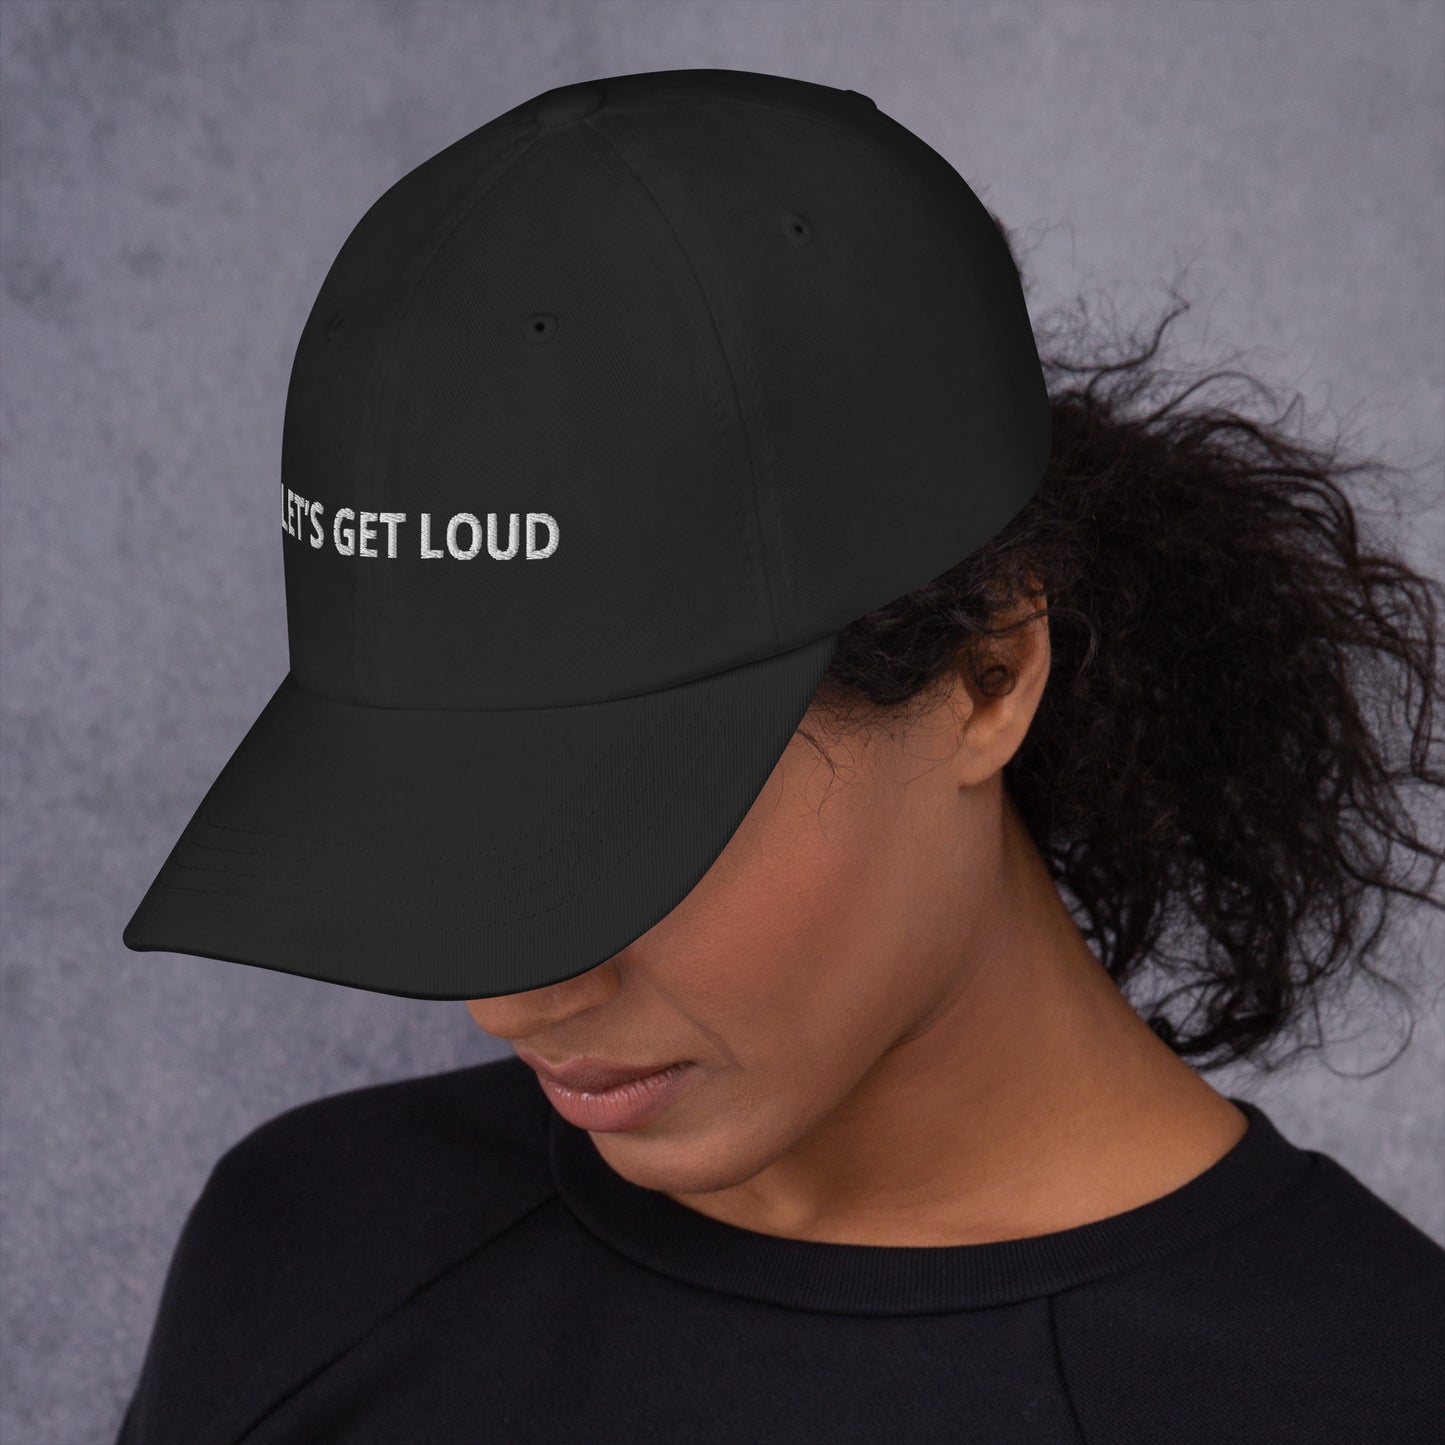 LET’S GET LOUD hat